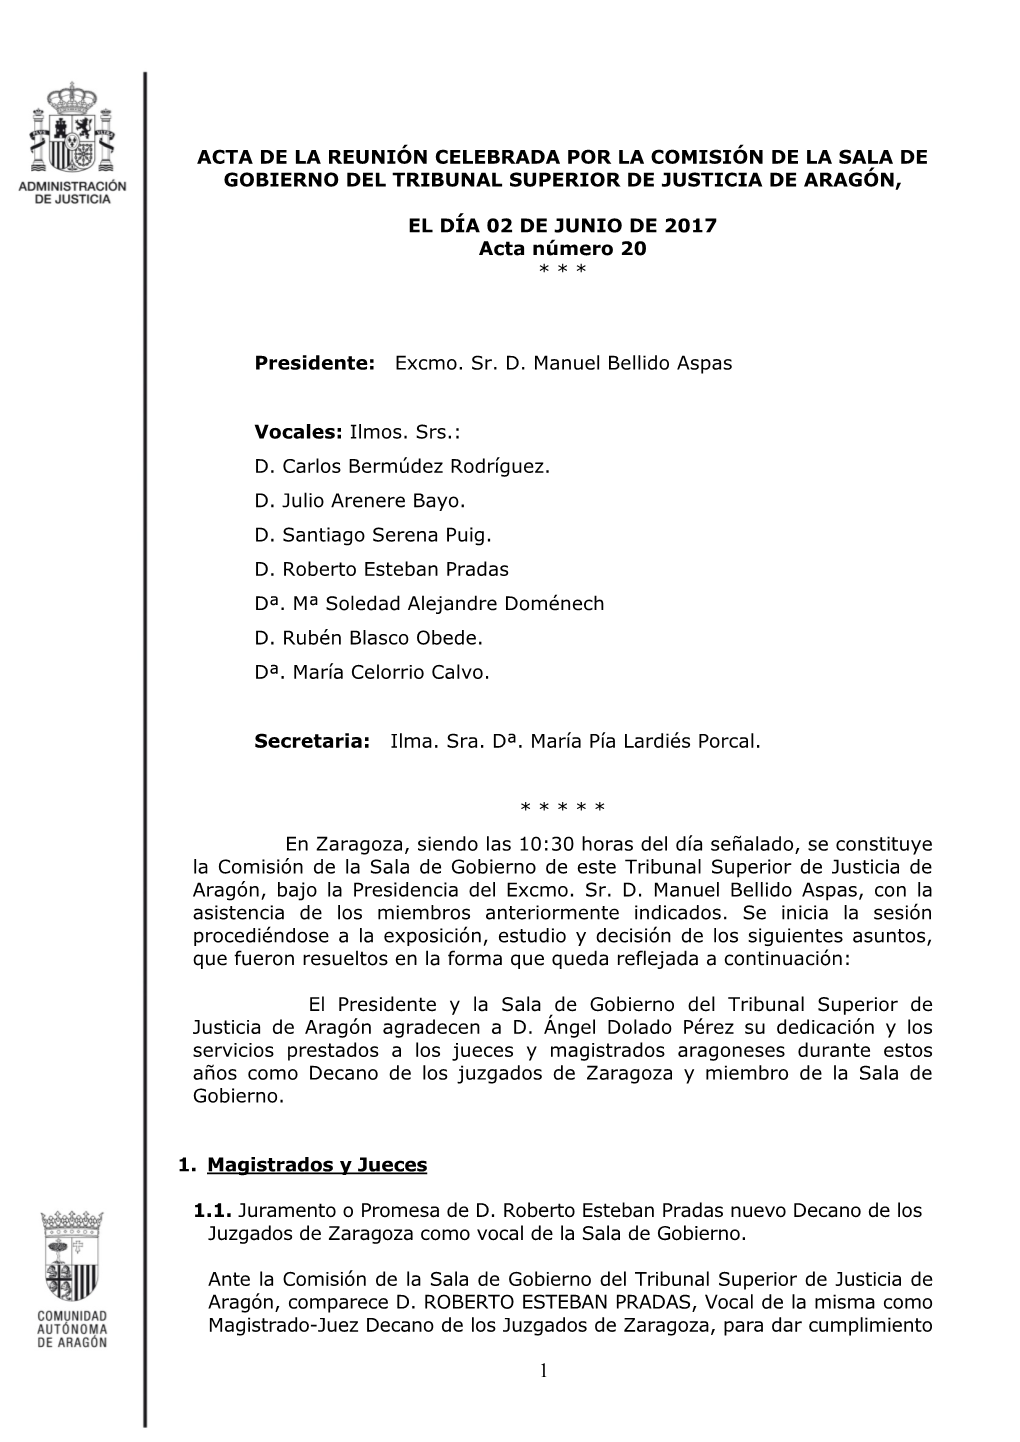 Acta De La Comisión De La Sala De Gobierno Del TSJ Aragón De 02 De Junio